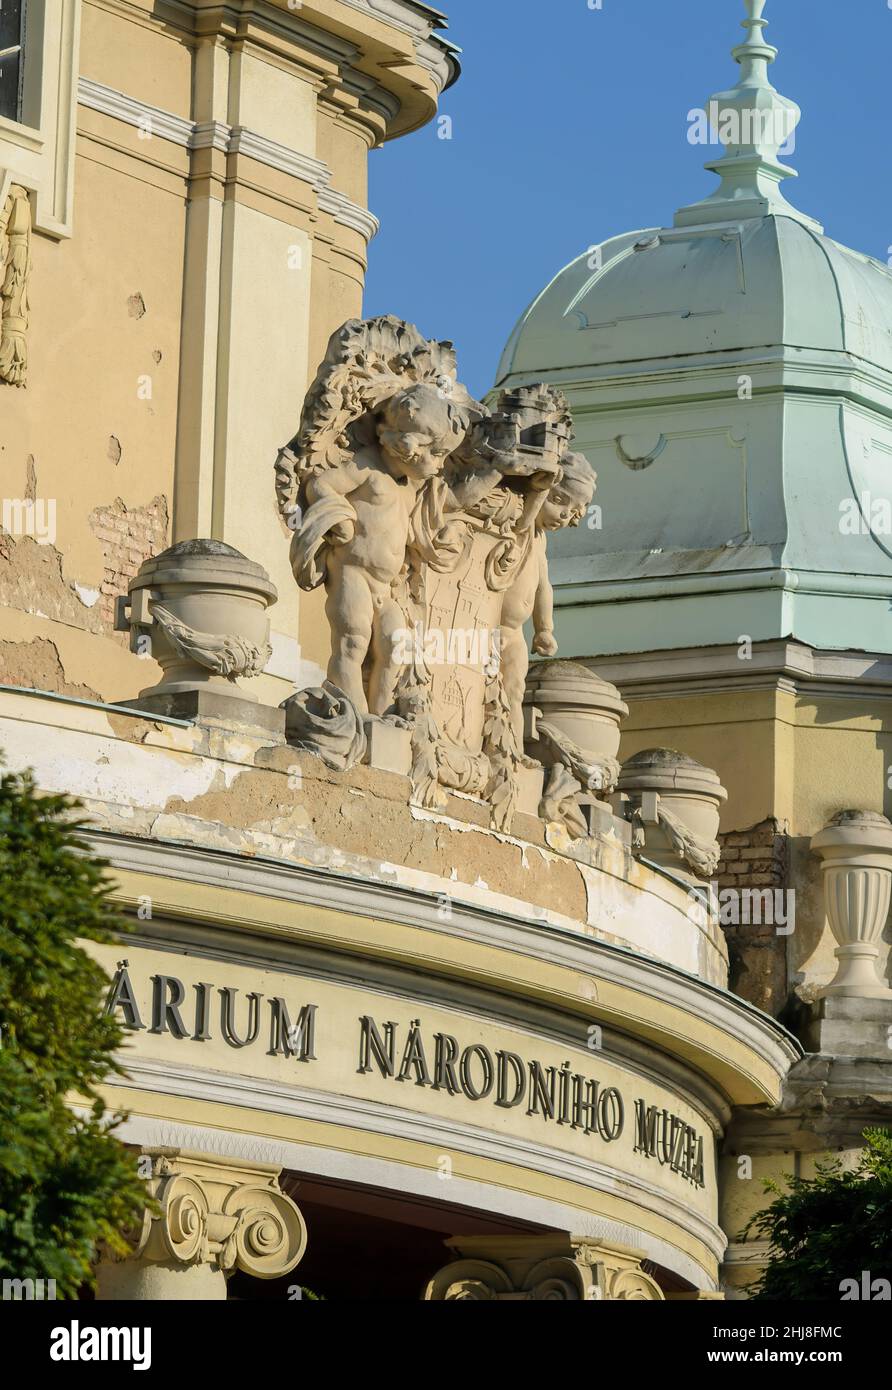 Statue im Nationalmuseum – Lapidarium (Narodni muzeum – Lapidarium) in Prag, Tschechische Republik Stockfoto